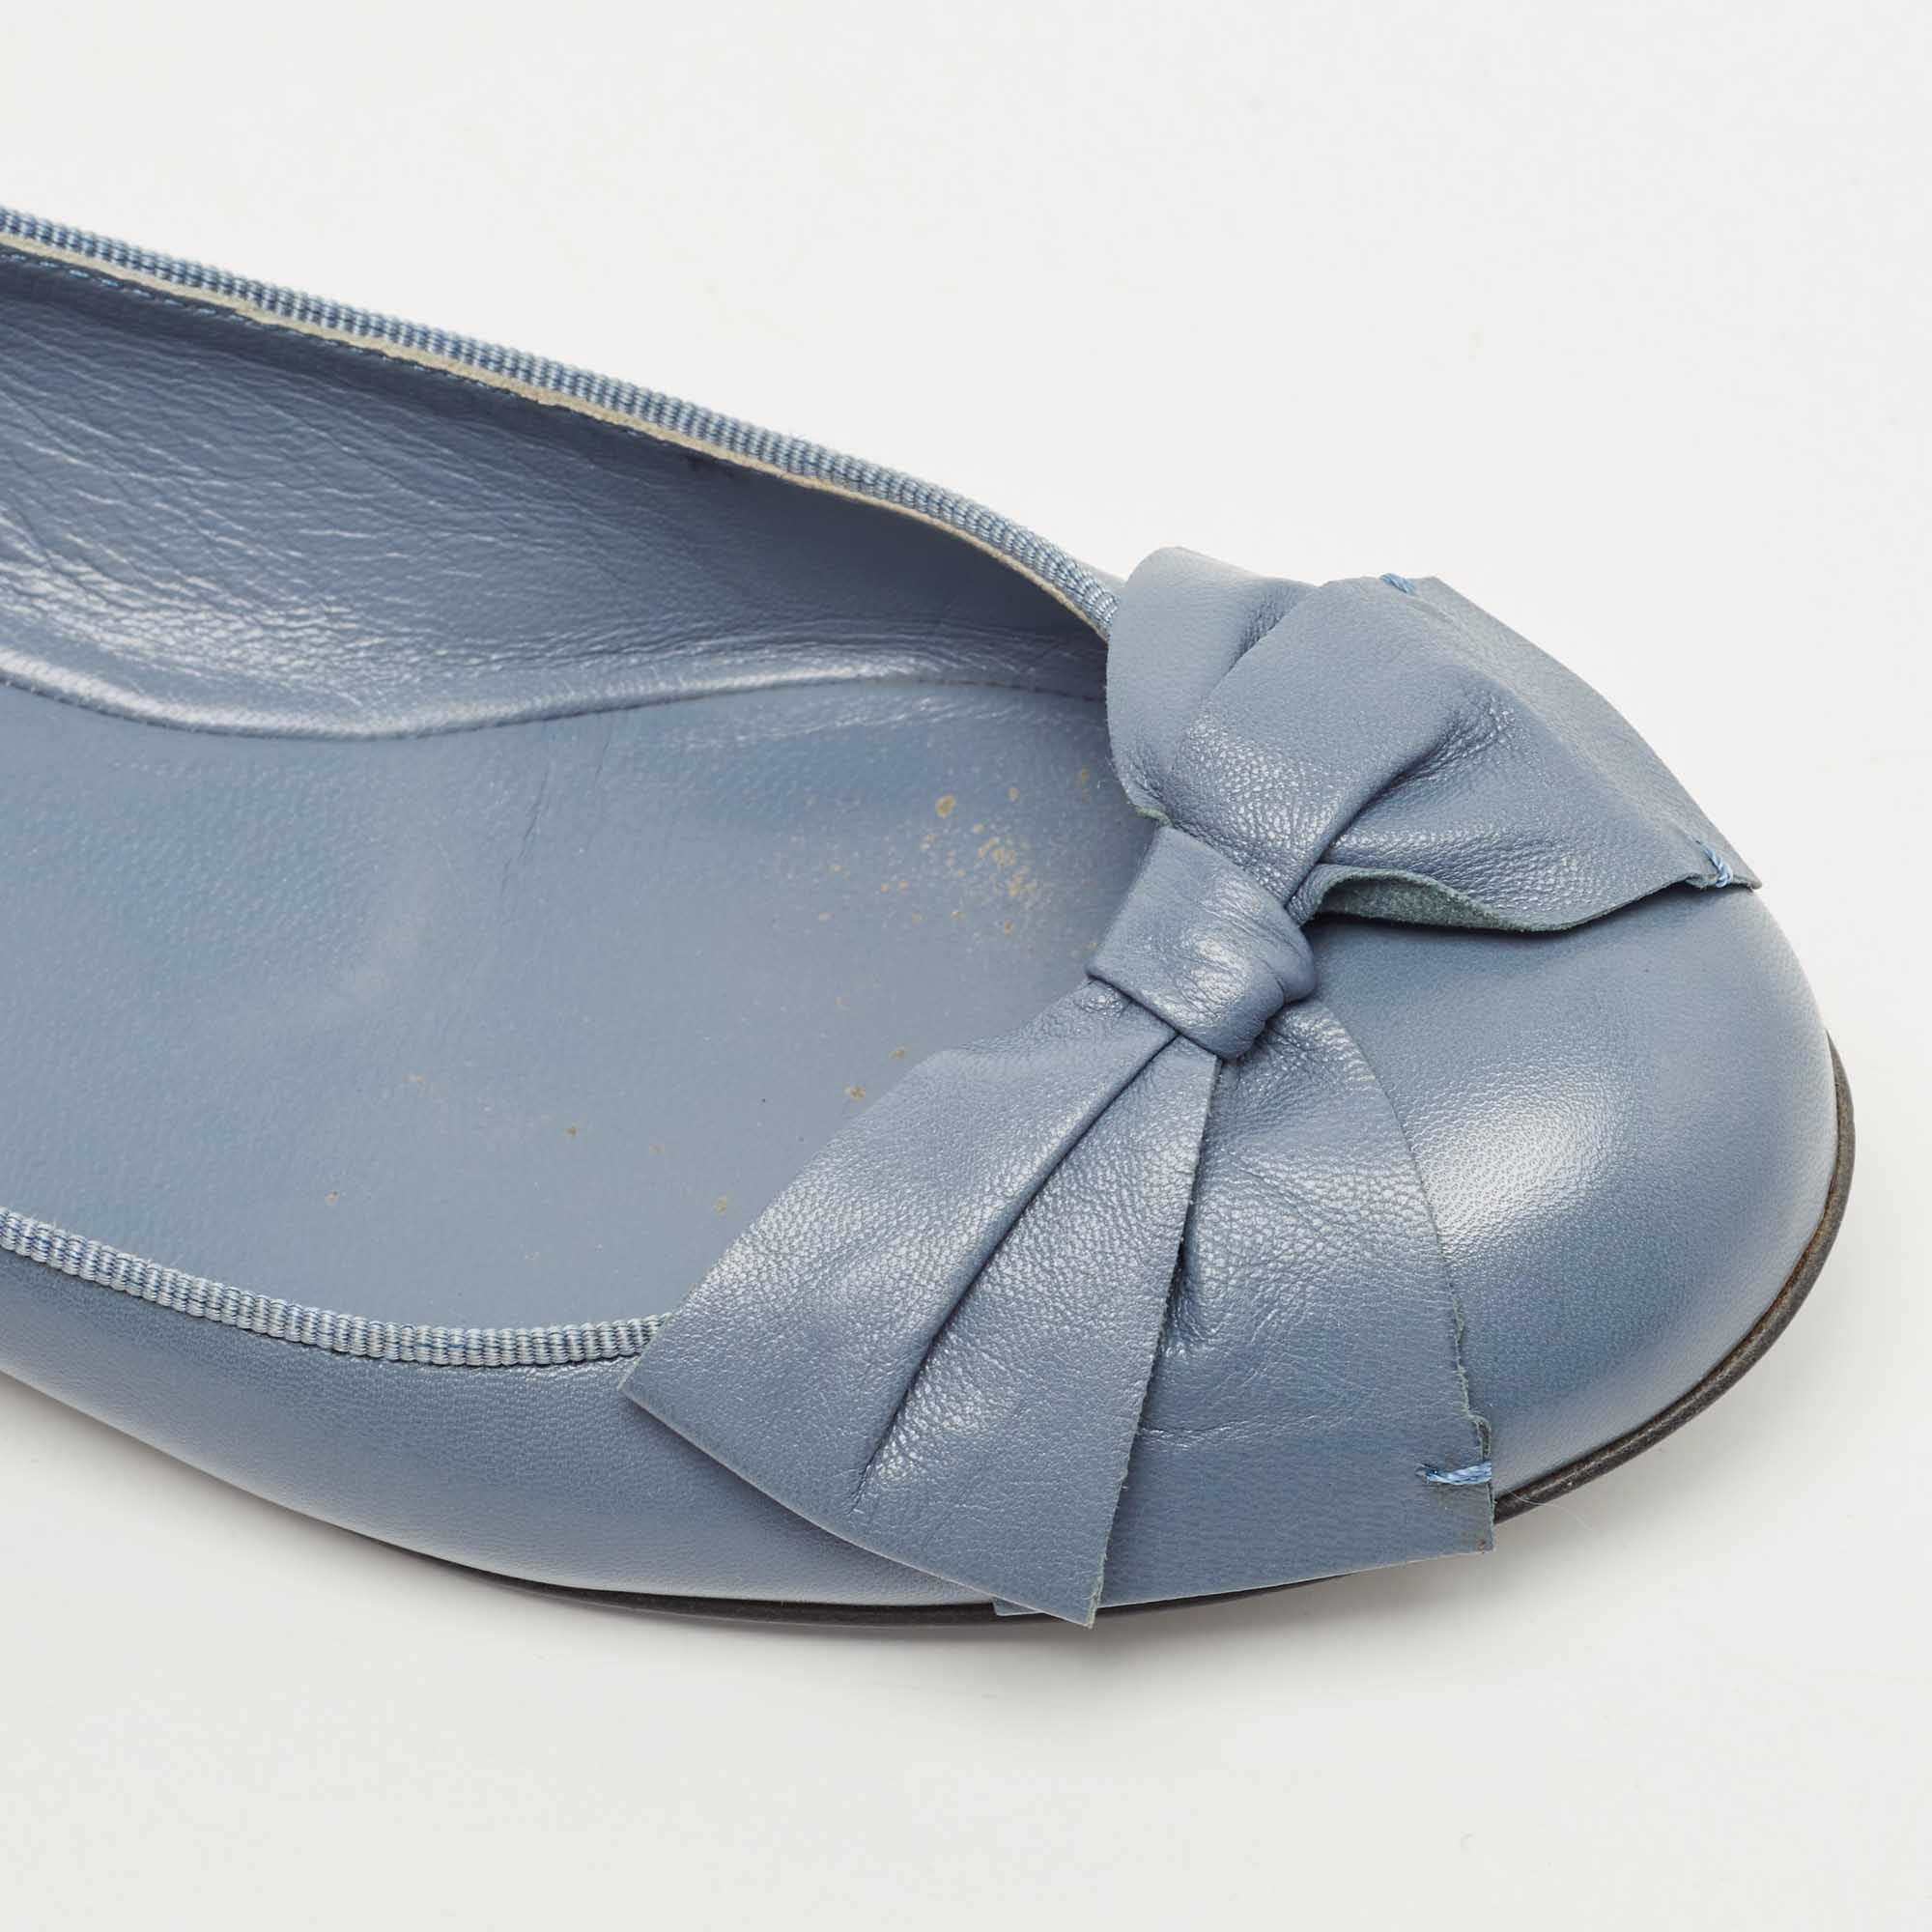 Bottega Veneta Blue Leather Bow Ballet Flats Size 36